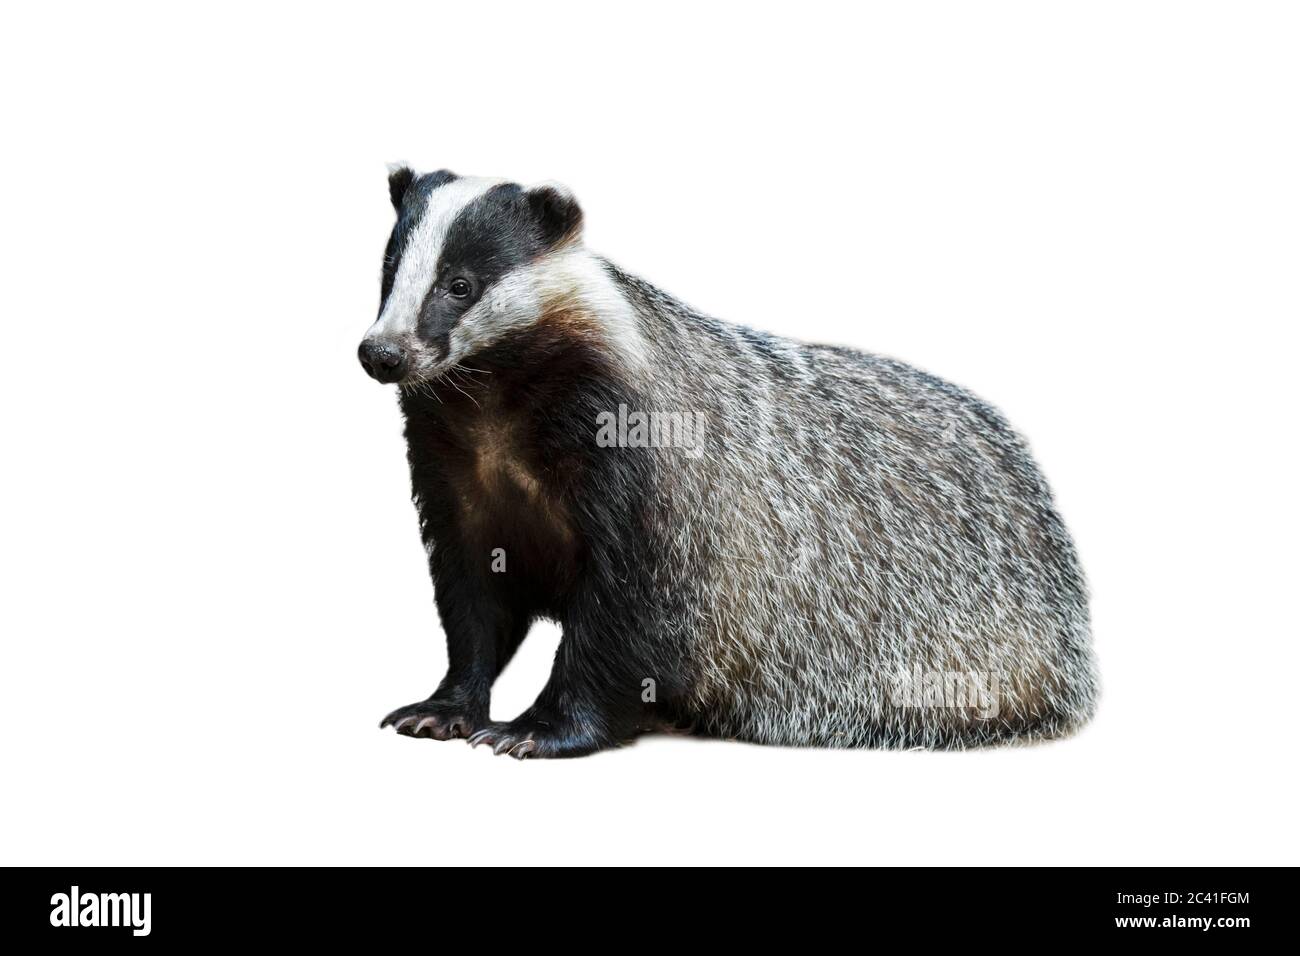 European badger (Meles meles) against white background Stock Photo